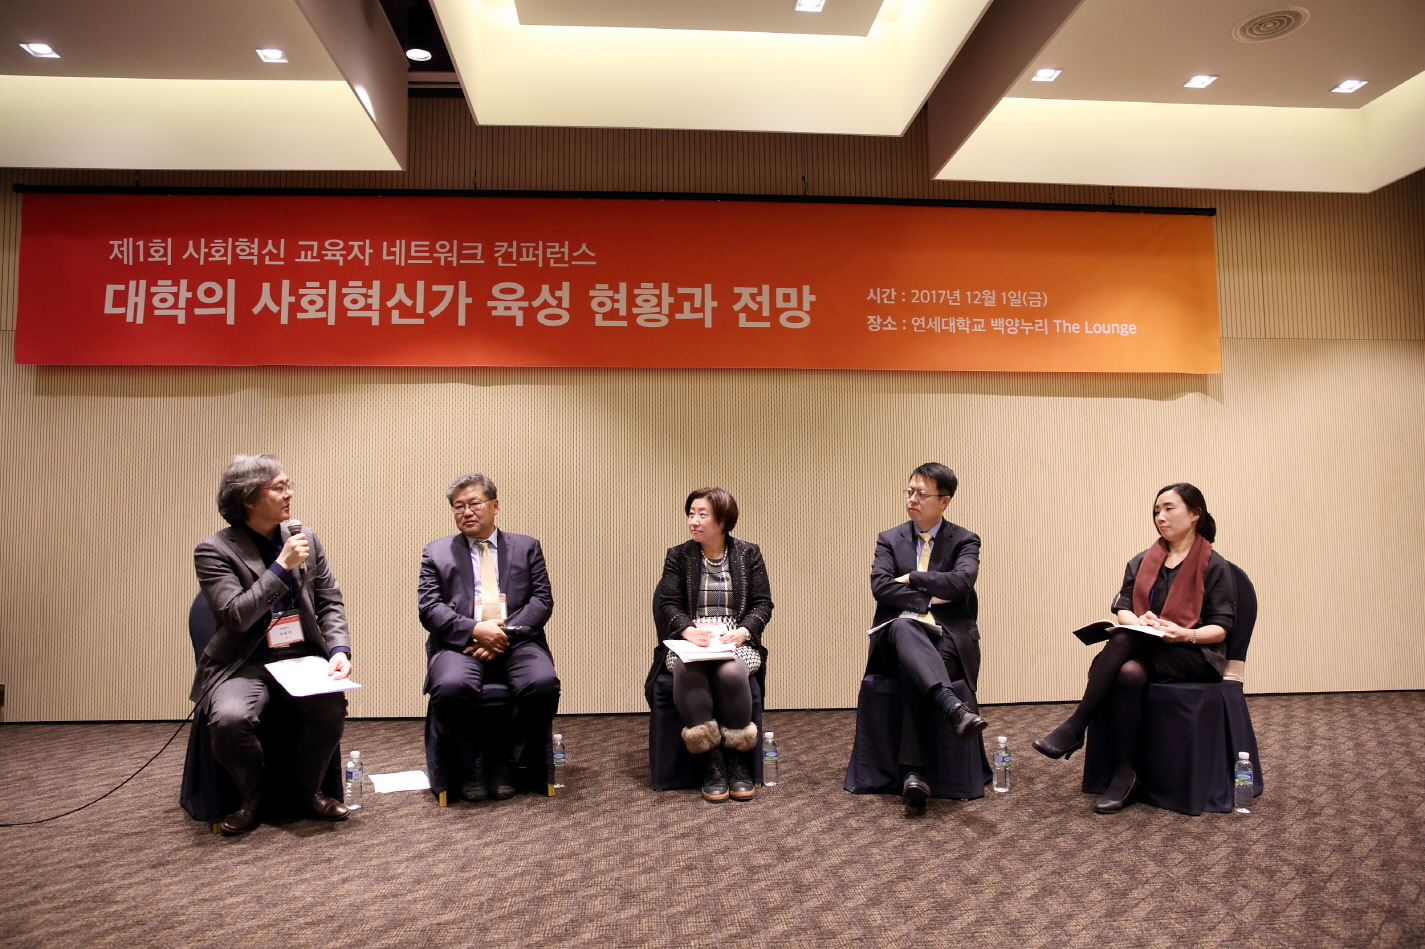 제 1회 사회 혁신 교육자 네트워크 컨퍼런스 개최 사진-참석자들의 토의 모습